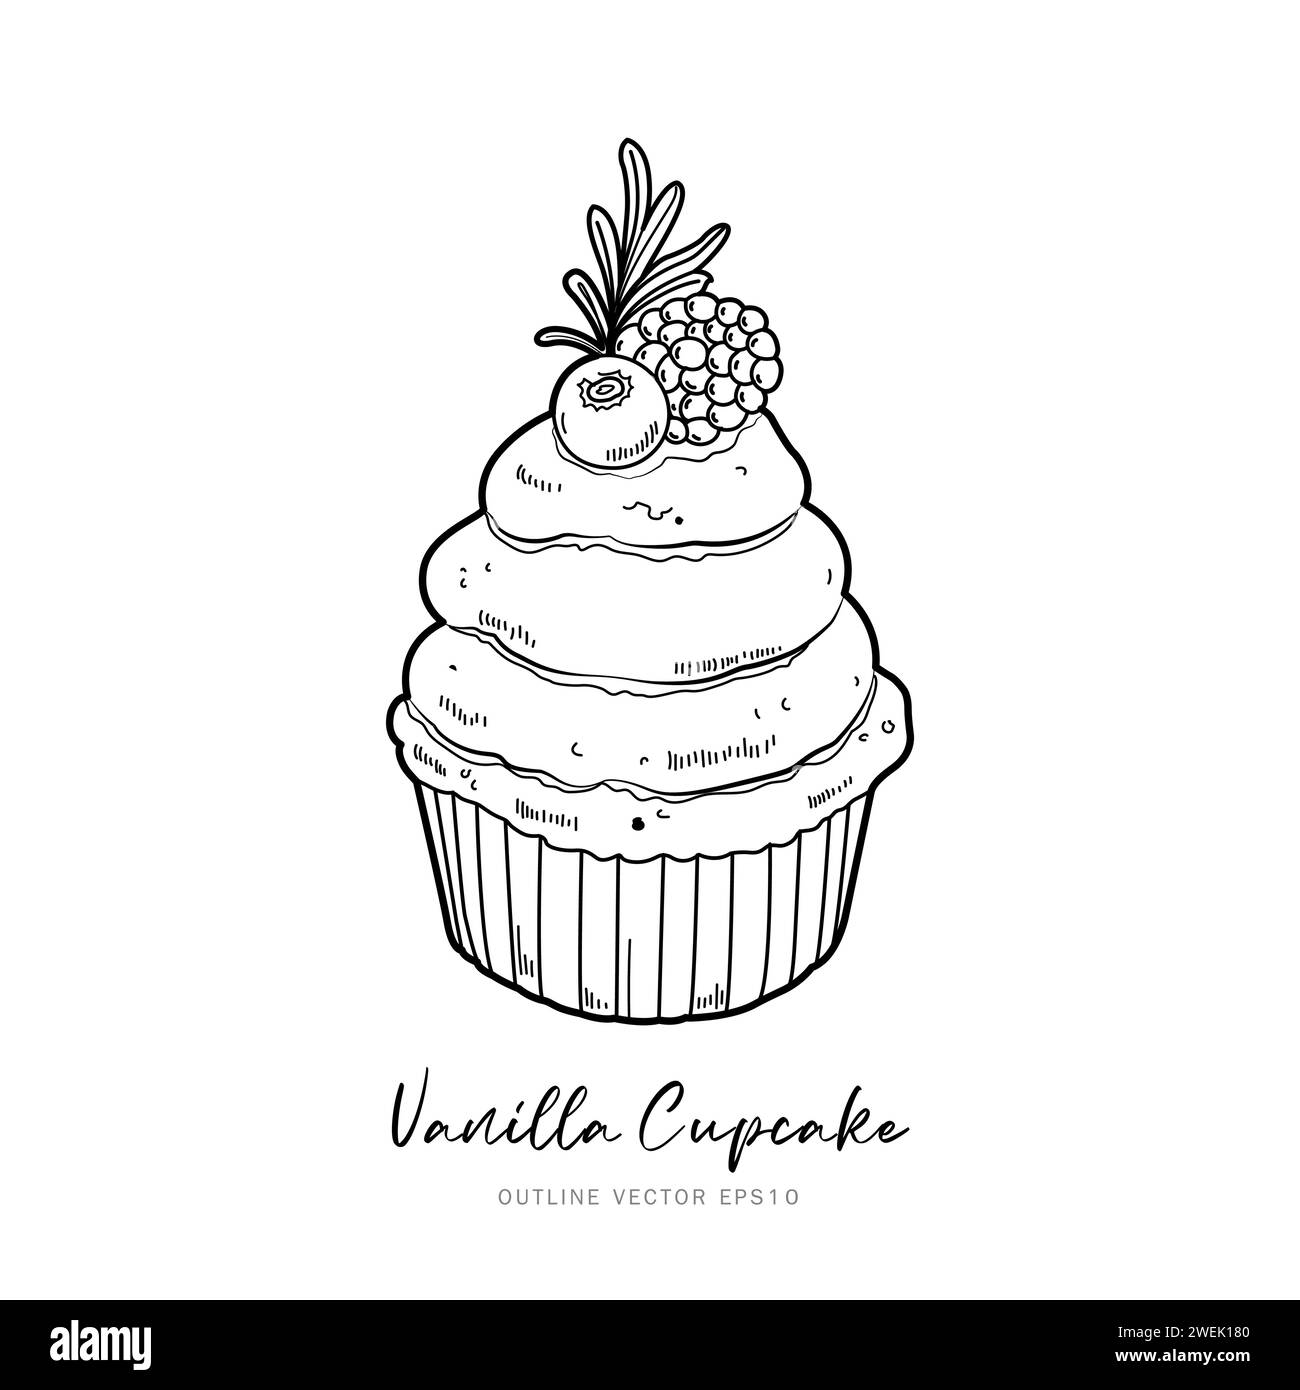 Cupcake dessert outline vector design on white background Stock Vector